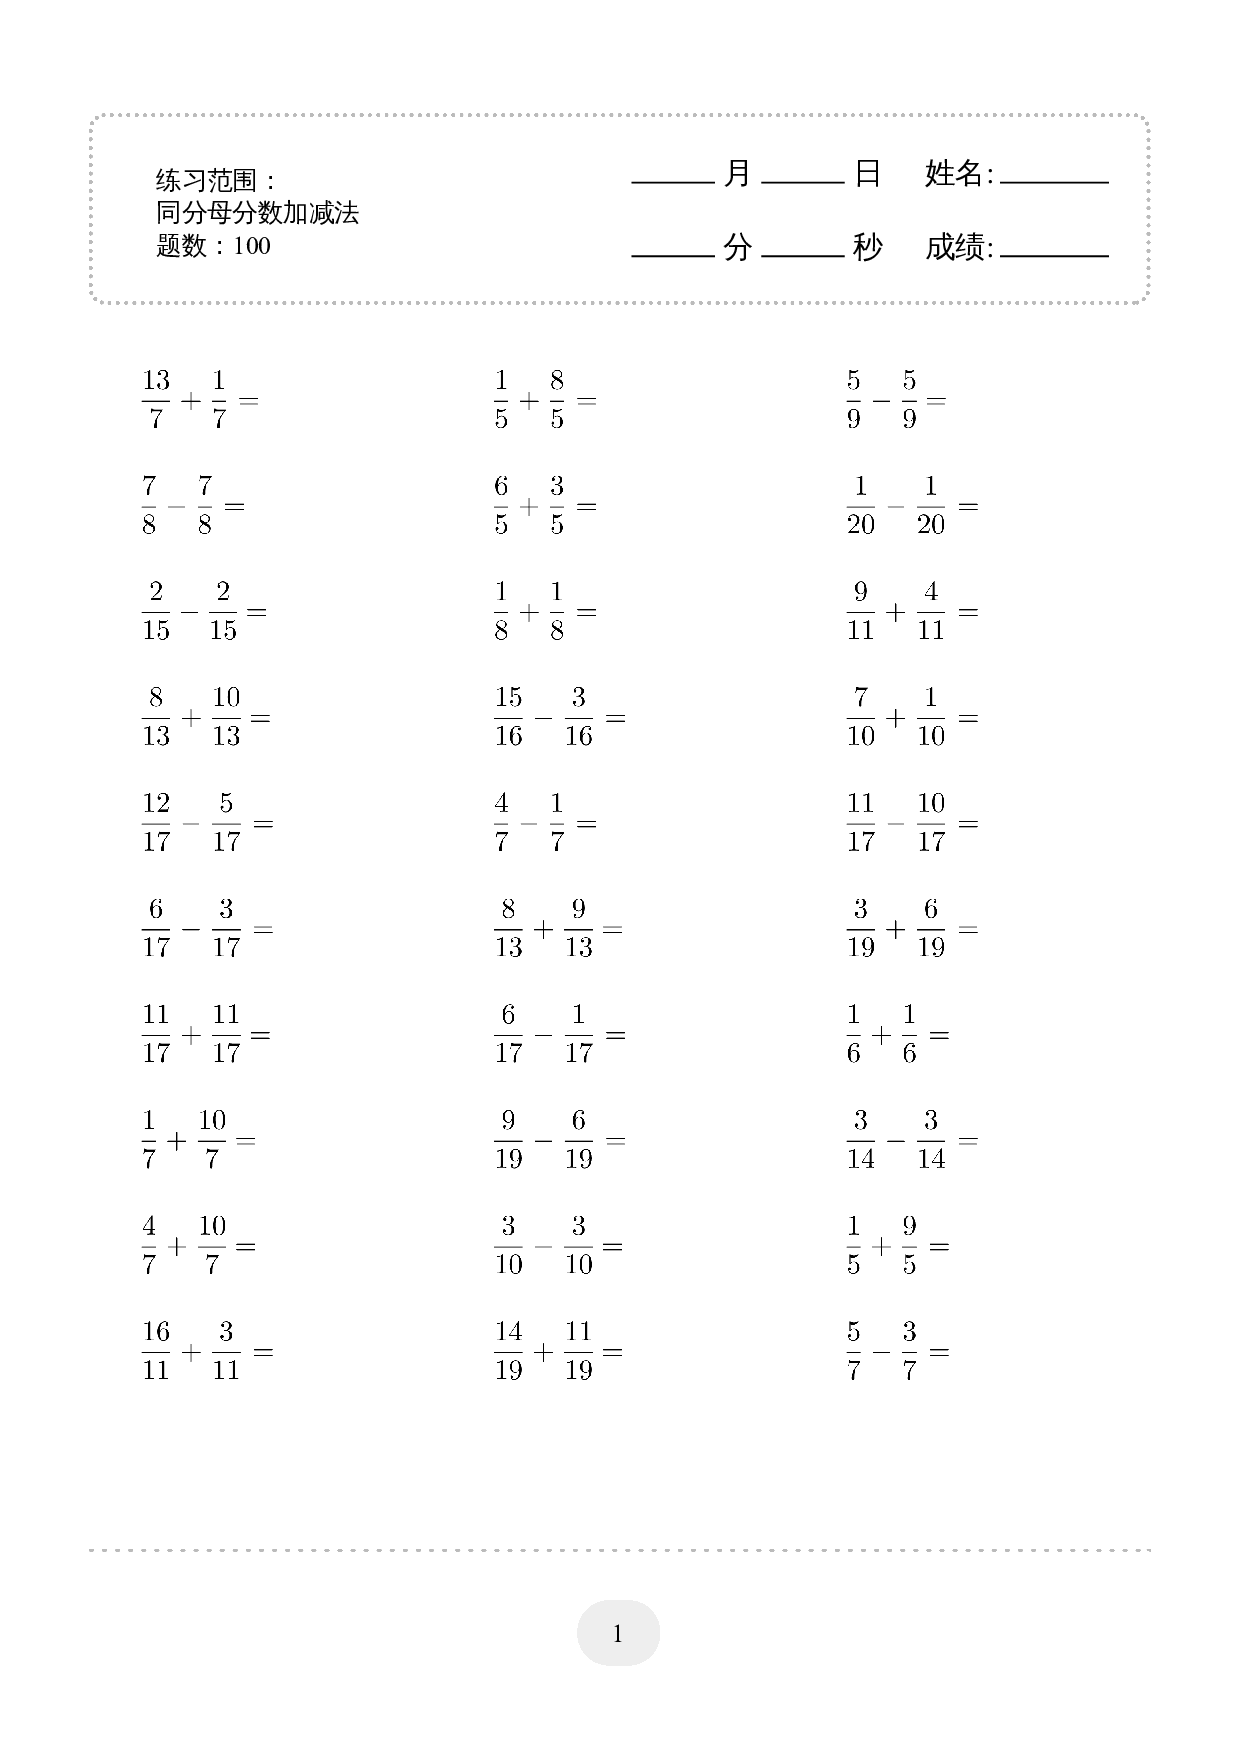 5年级下册数学口算题 (同分母分数加减法) 1500题